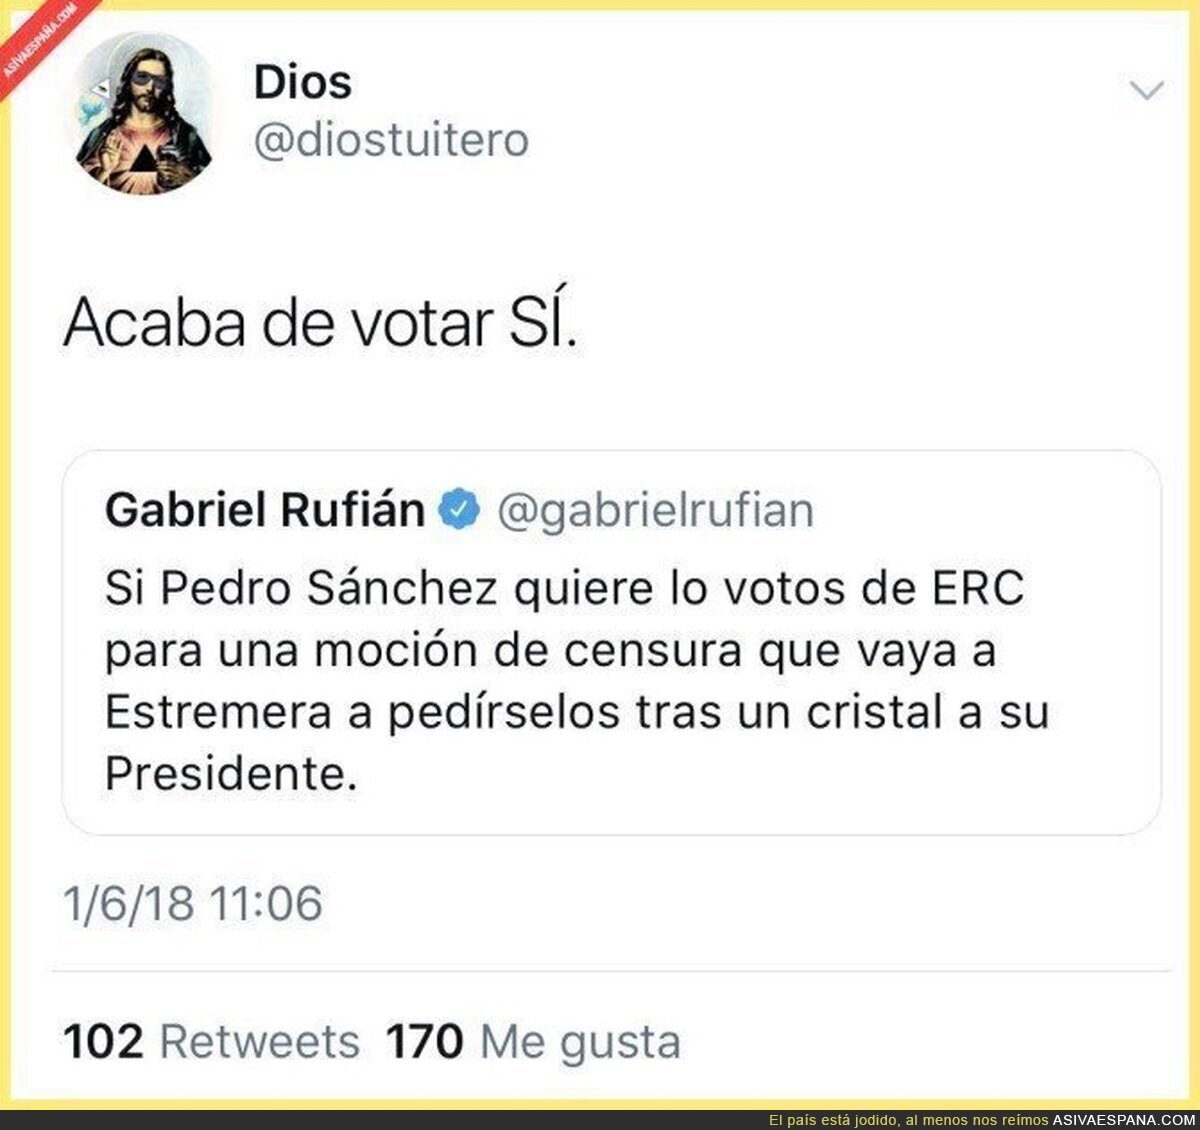 Gabriel Rufián por favor deje de hacer el ridículo